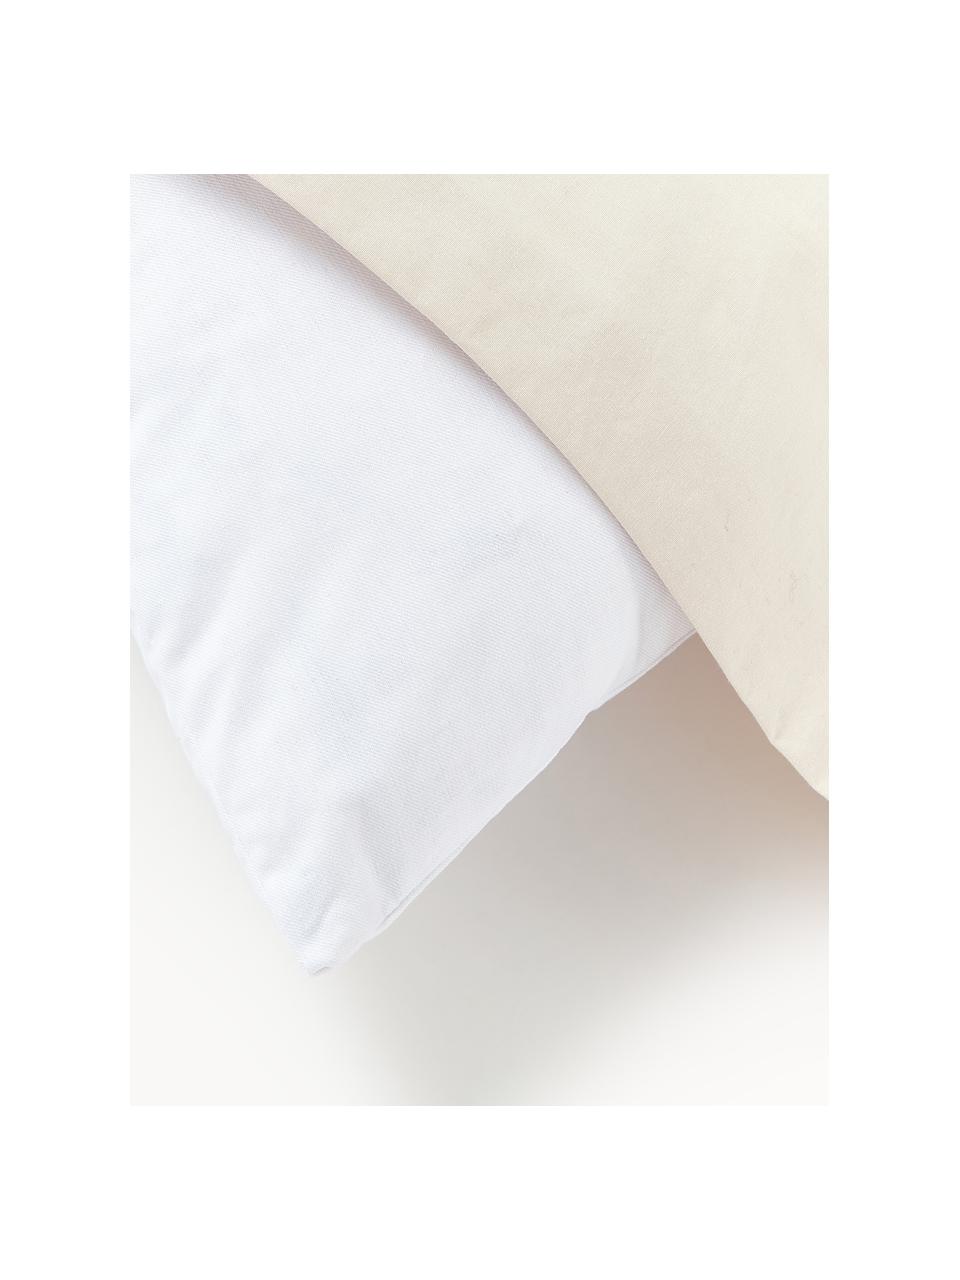 Výplň dekorativního polštáře Comfort, péřová výplň, různé velikosti, Bílá, Š 30 cm, D 70 cm